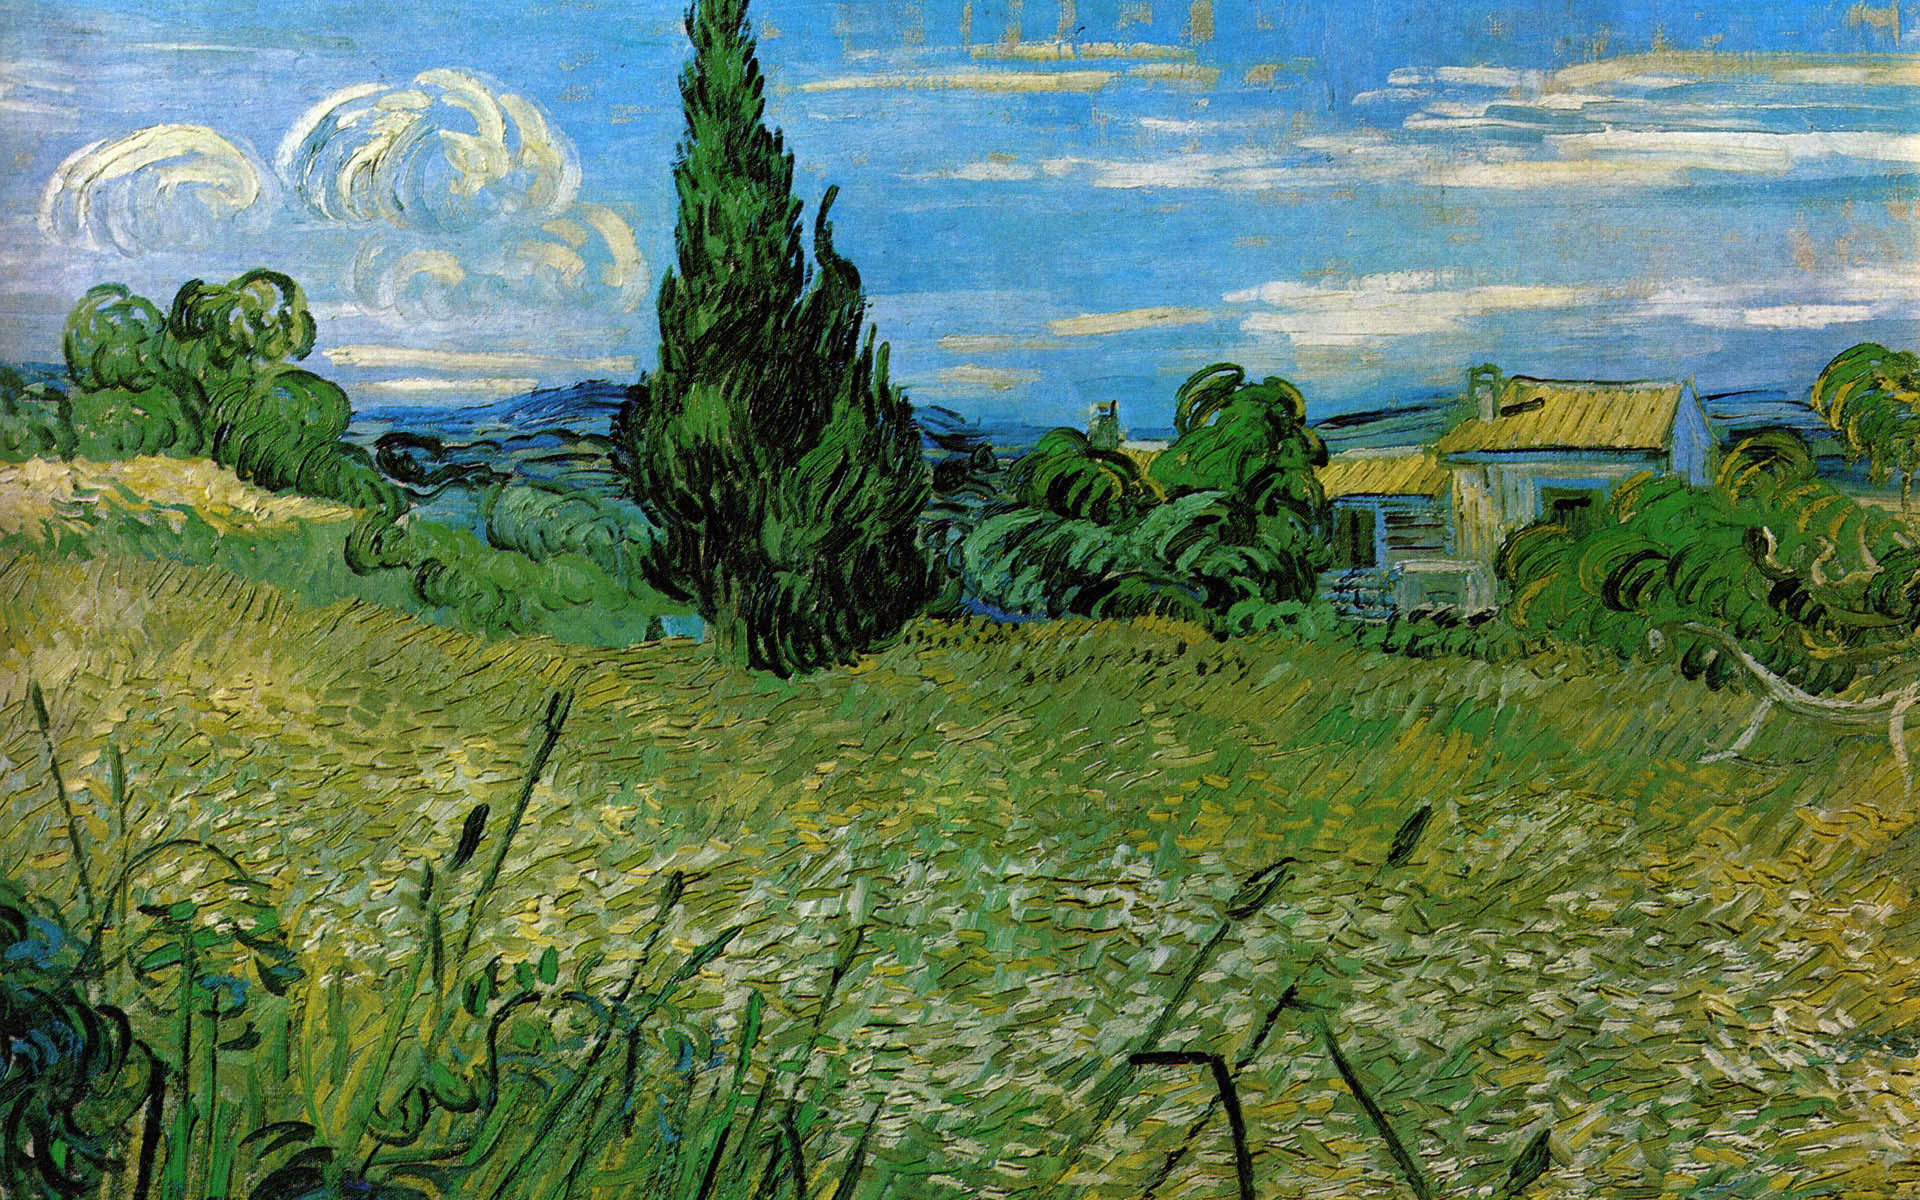 Cùng thưởng thức hình nền máy tính độc đáo với những tác phẩm nghệ thuật của Van Gogh! Sử dụng những bức tranh nổi tiếng như \